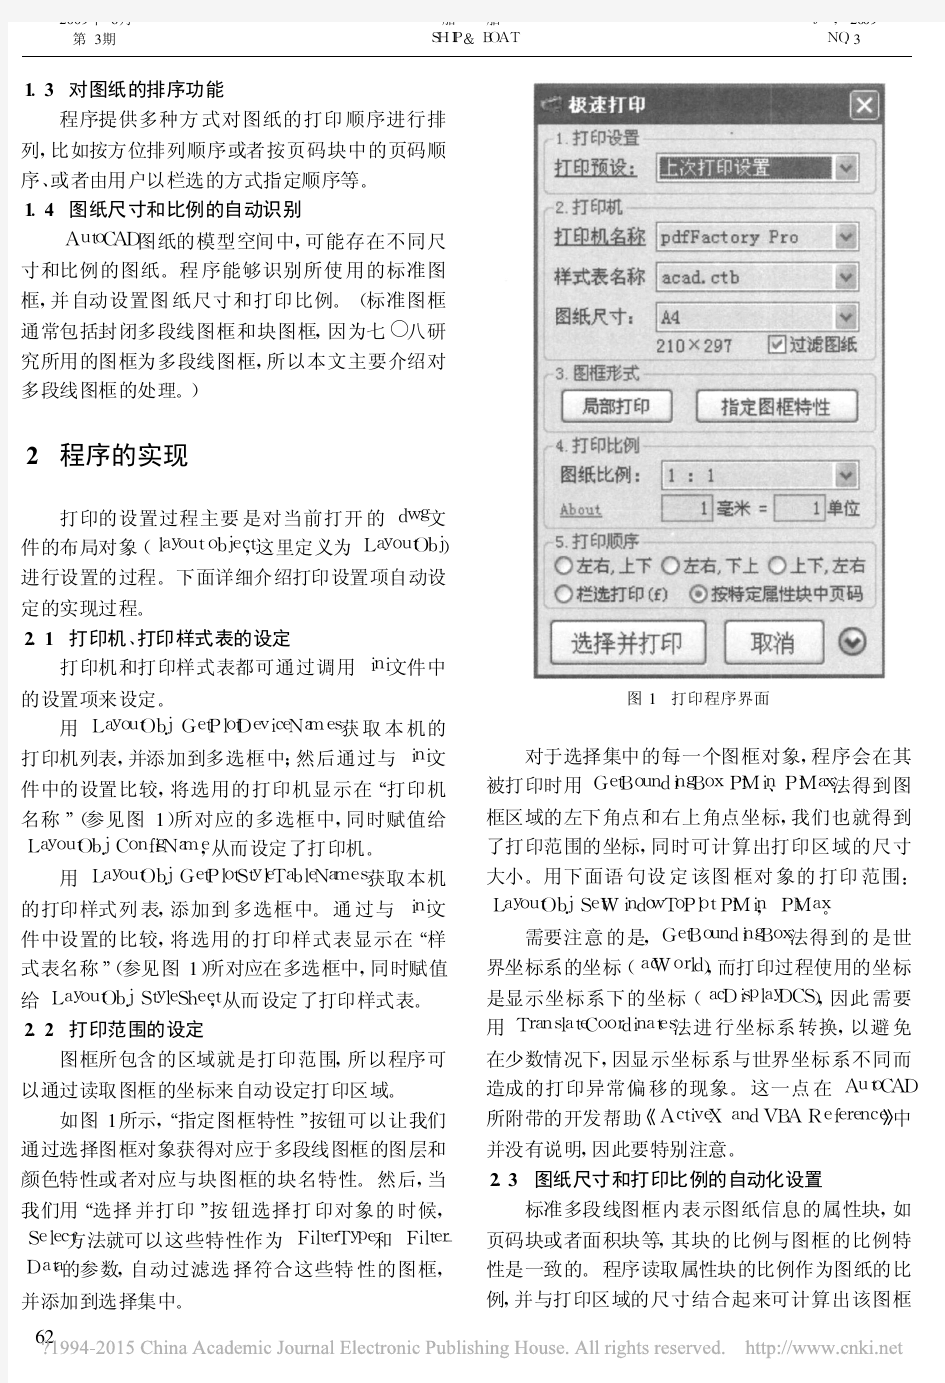 利用VB二次开发AutoCAD提升打印功能_徐天晓